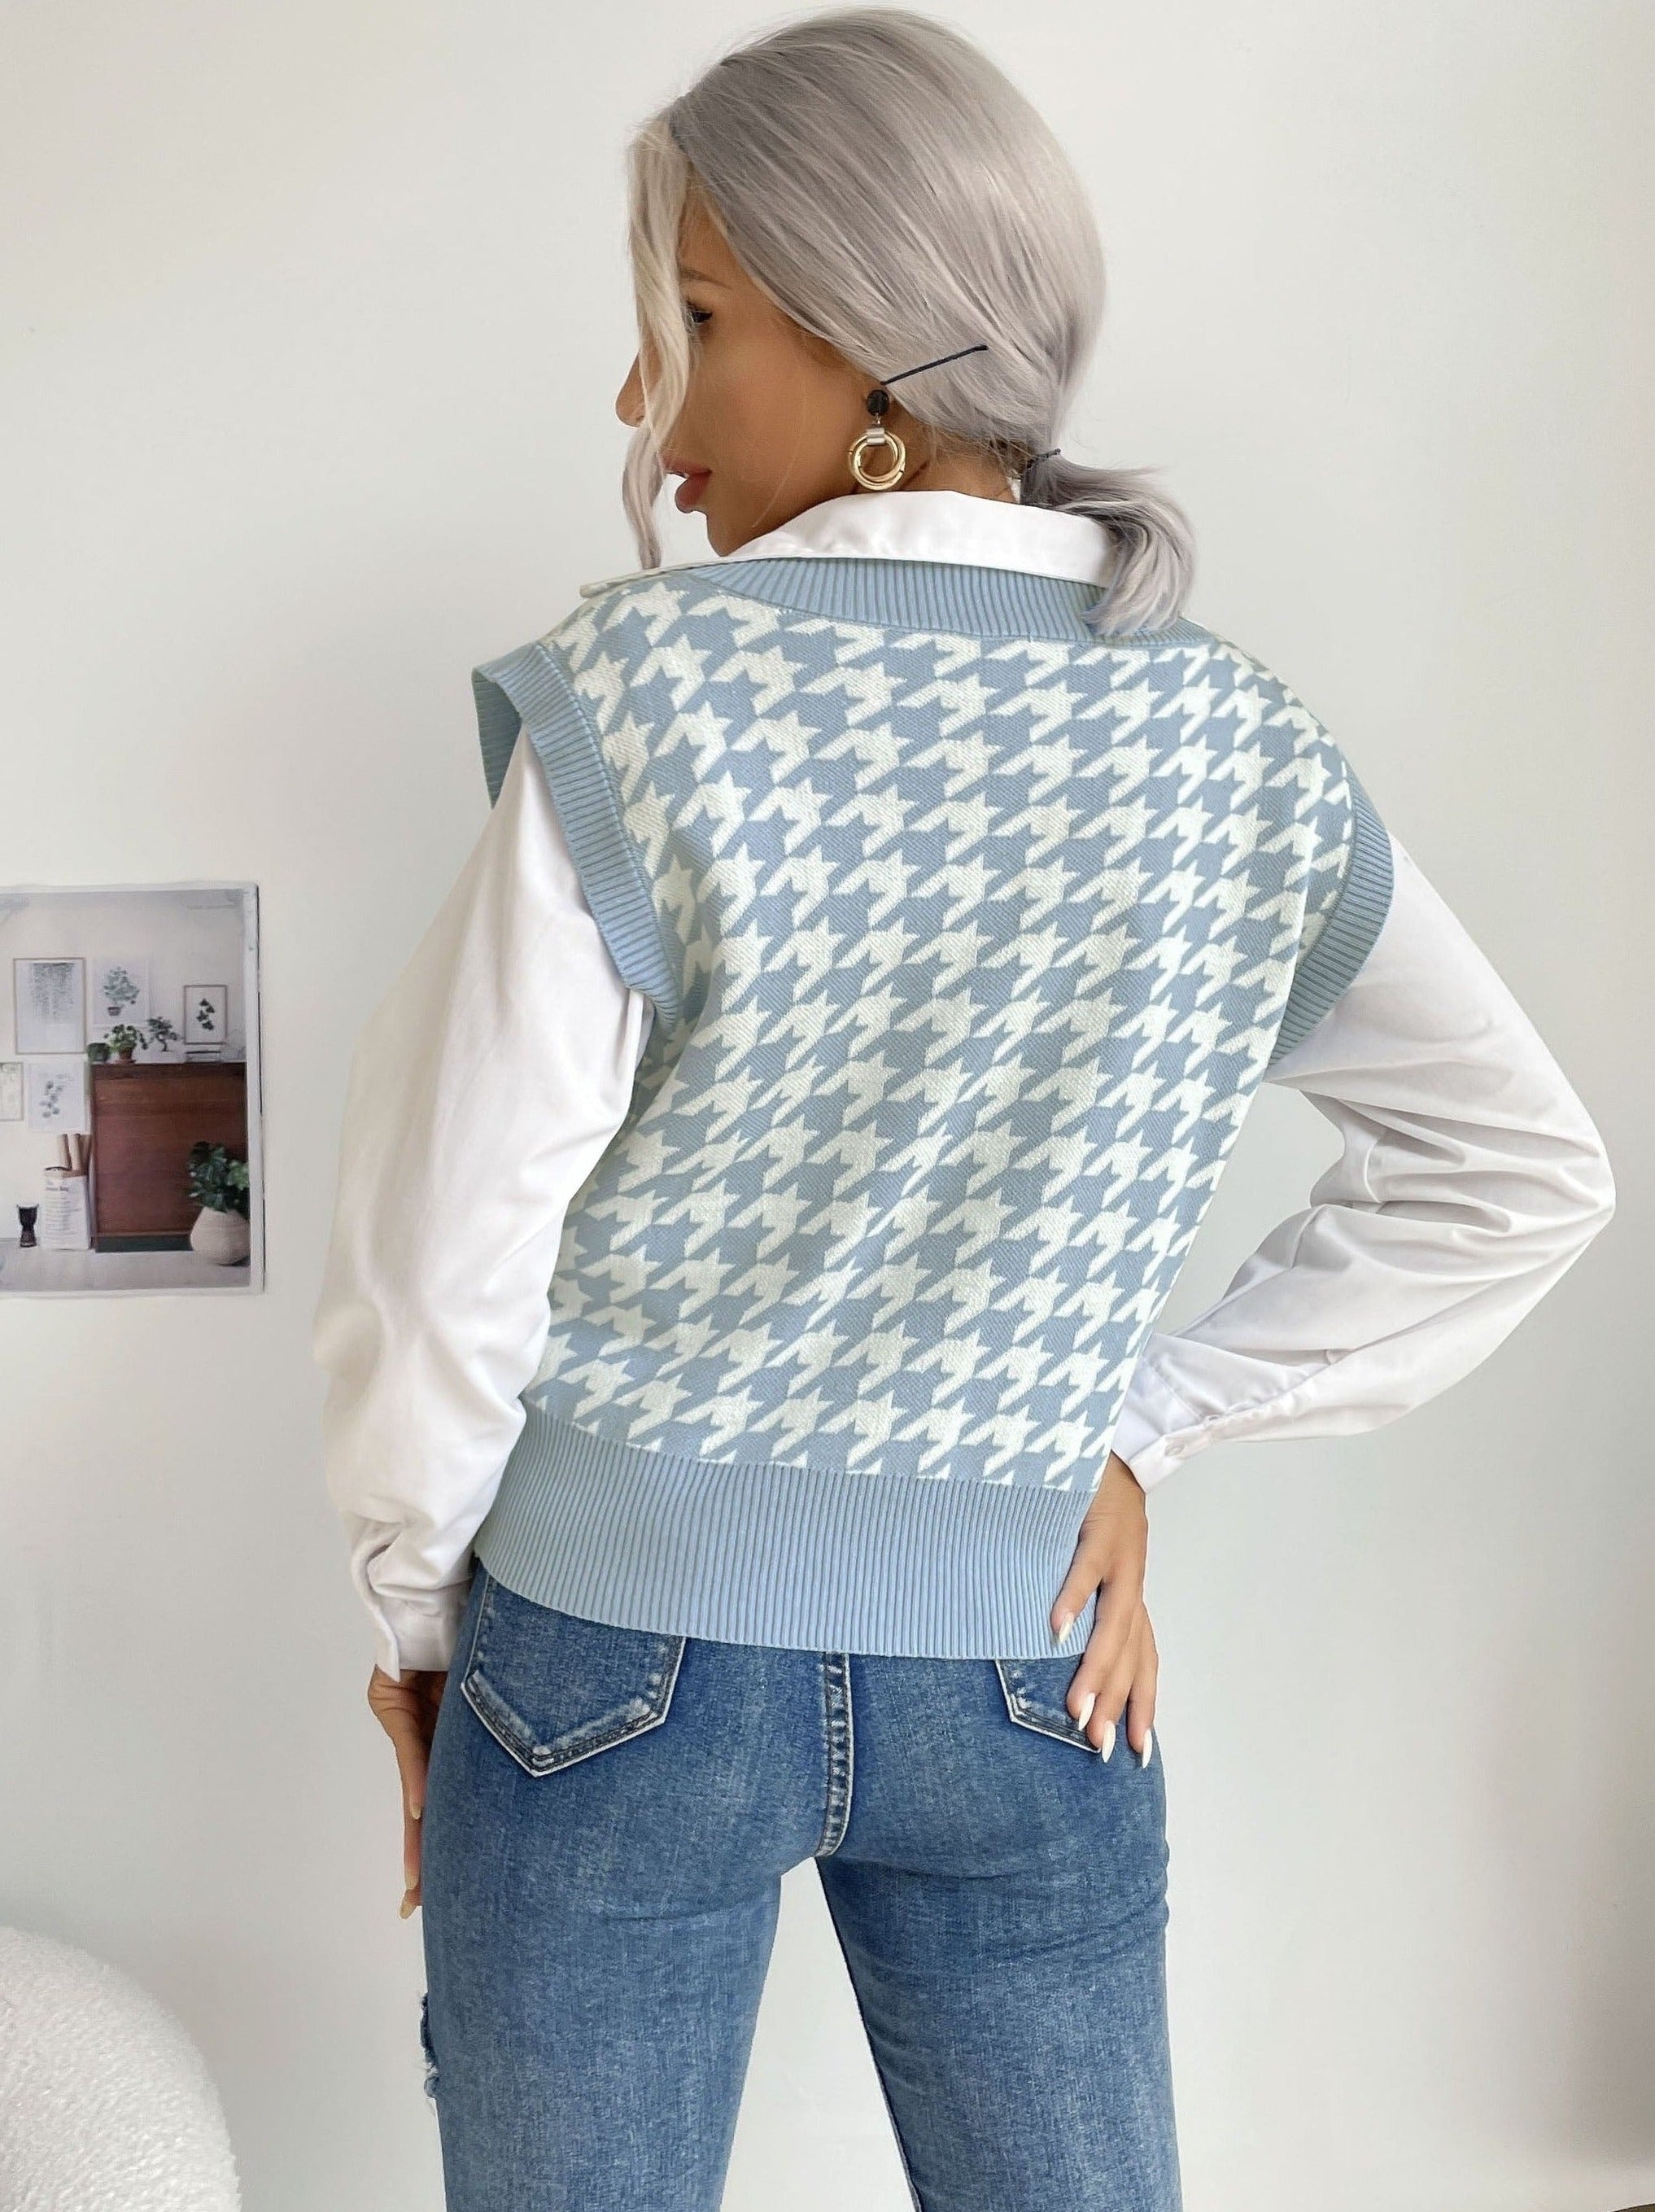 v-neck Ladies Sweater Vest